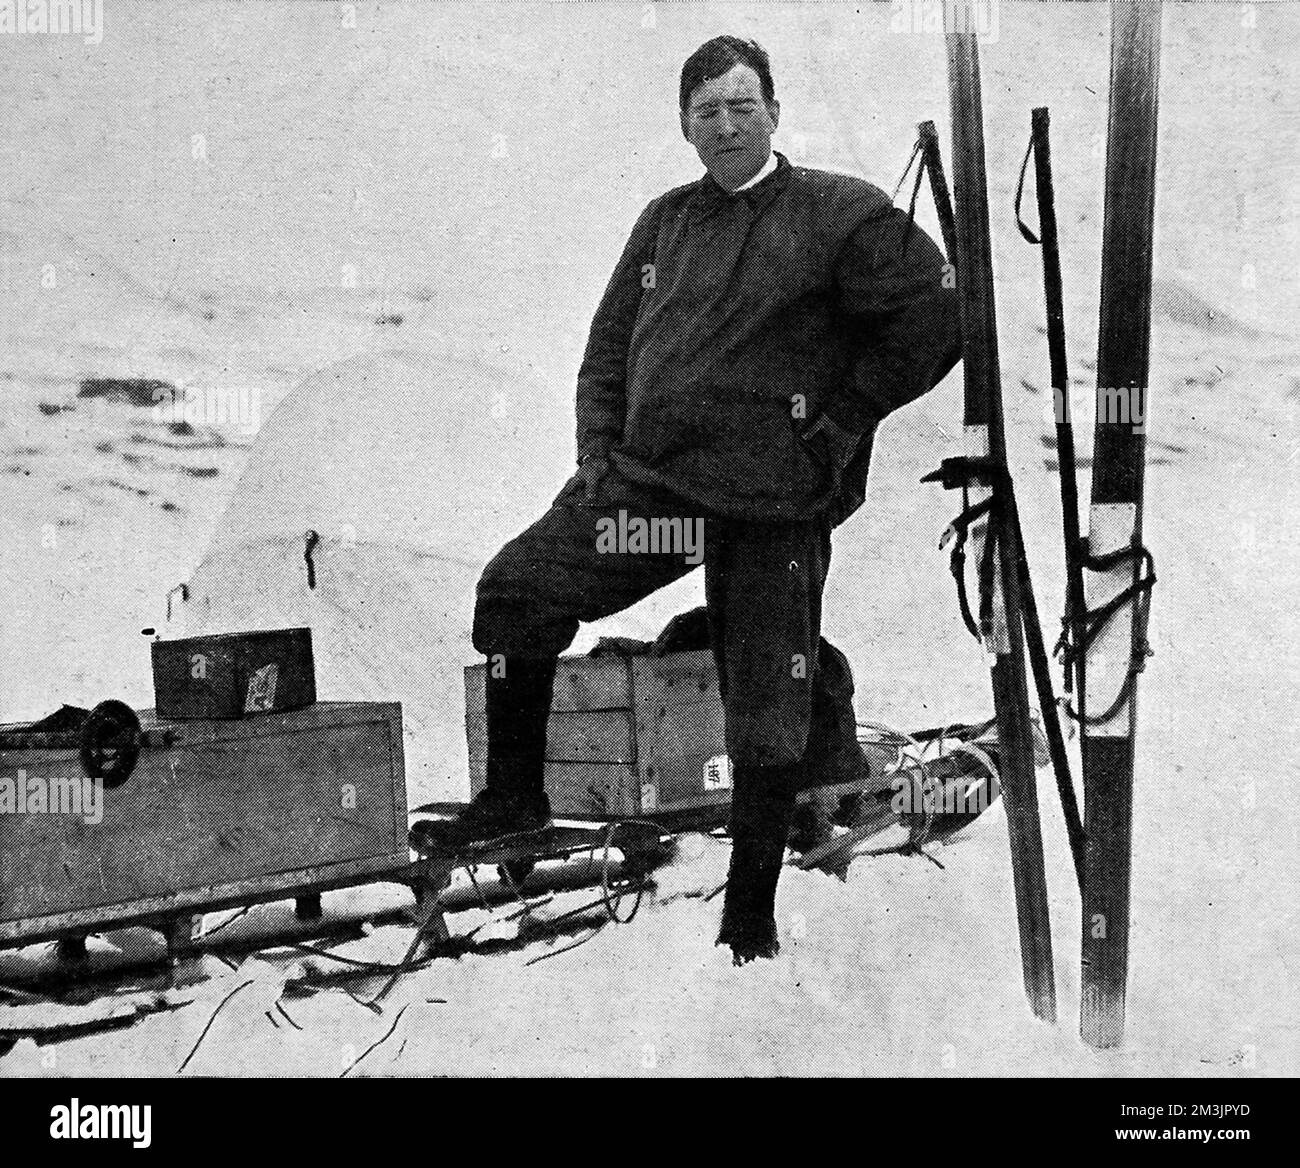 Sir Ernest Shackleton, vêtu d'un kit adapté aux conditions antarctiques avant son expédition transantarctique en 1914. Date: 1914 Banque D'Images